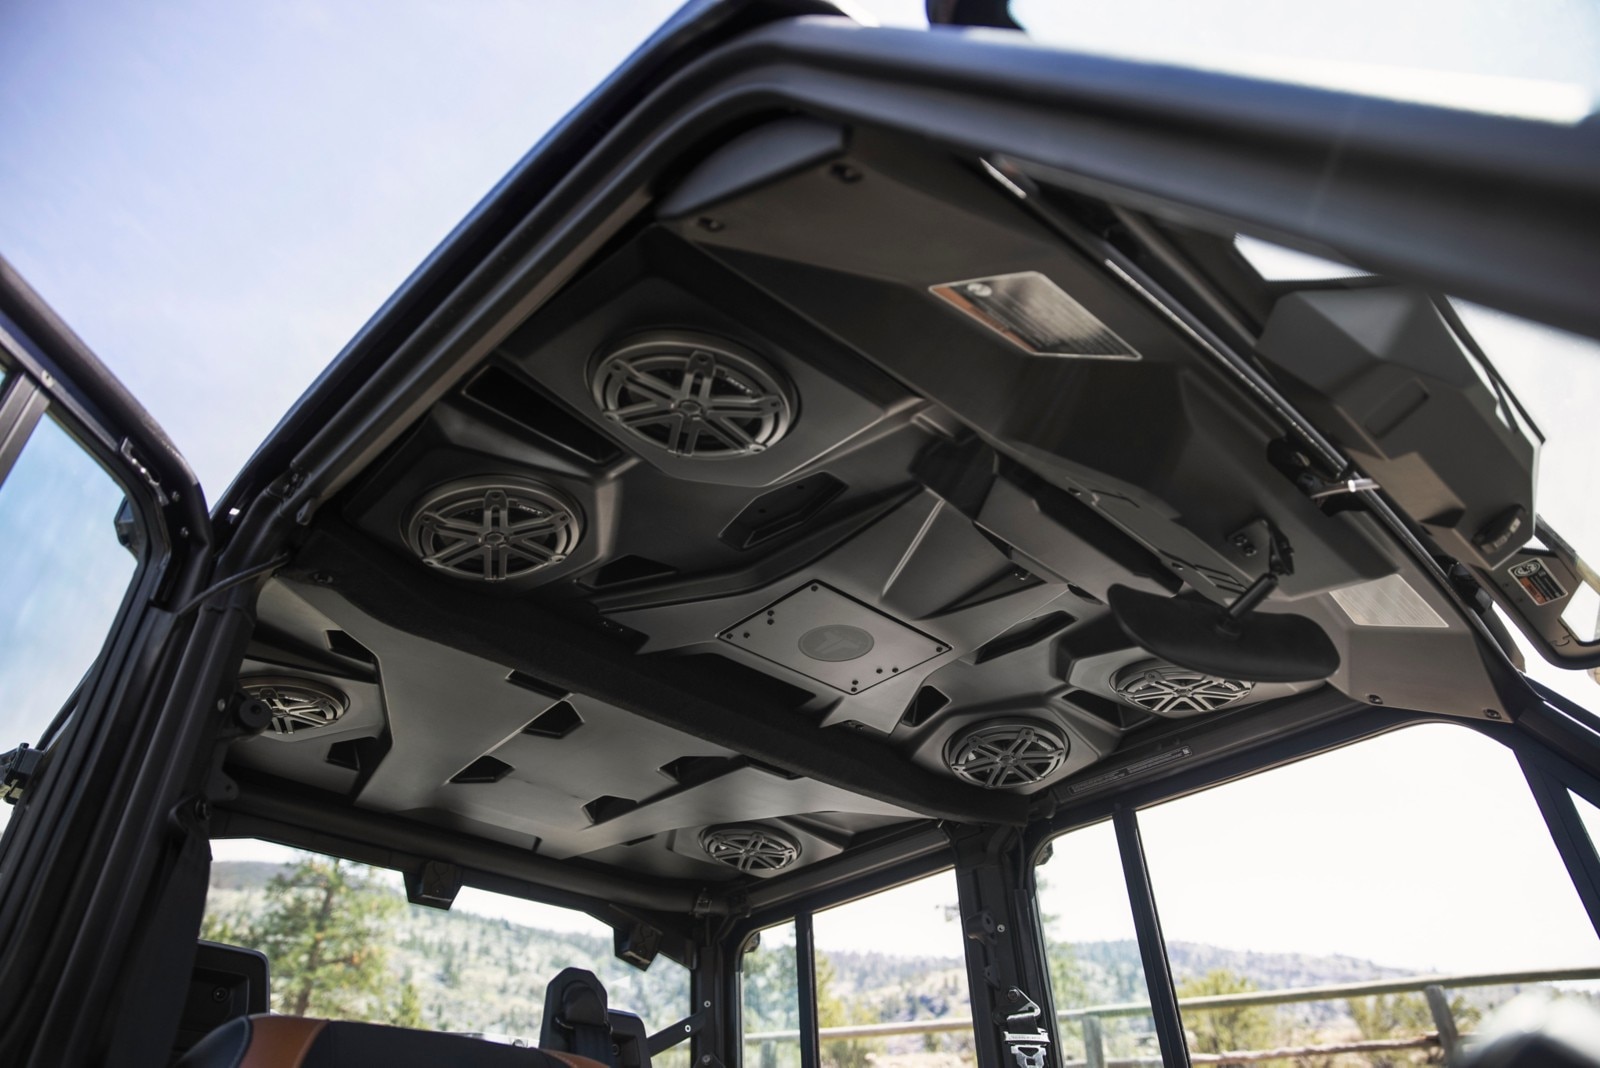 Nova zvočna streha Can-Am Traxter na modelu Lone Star CAB s 6 zvočniki